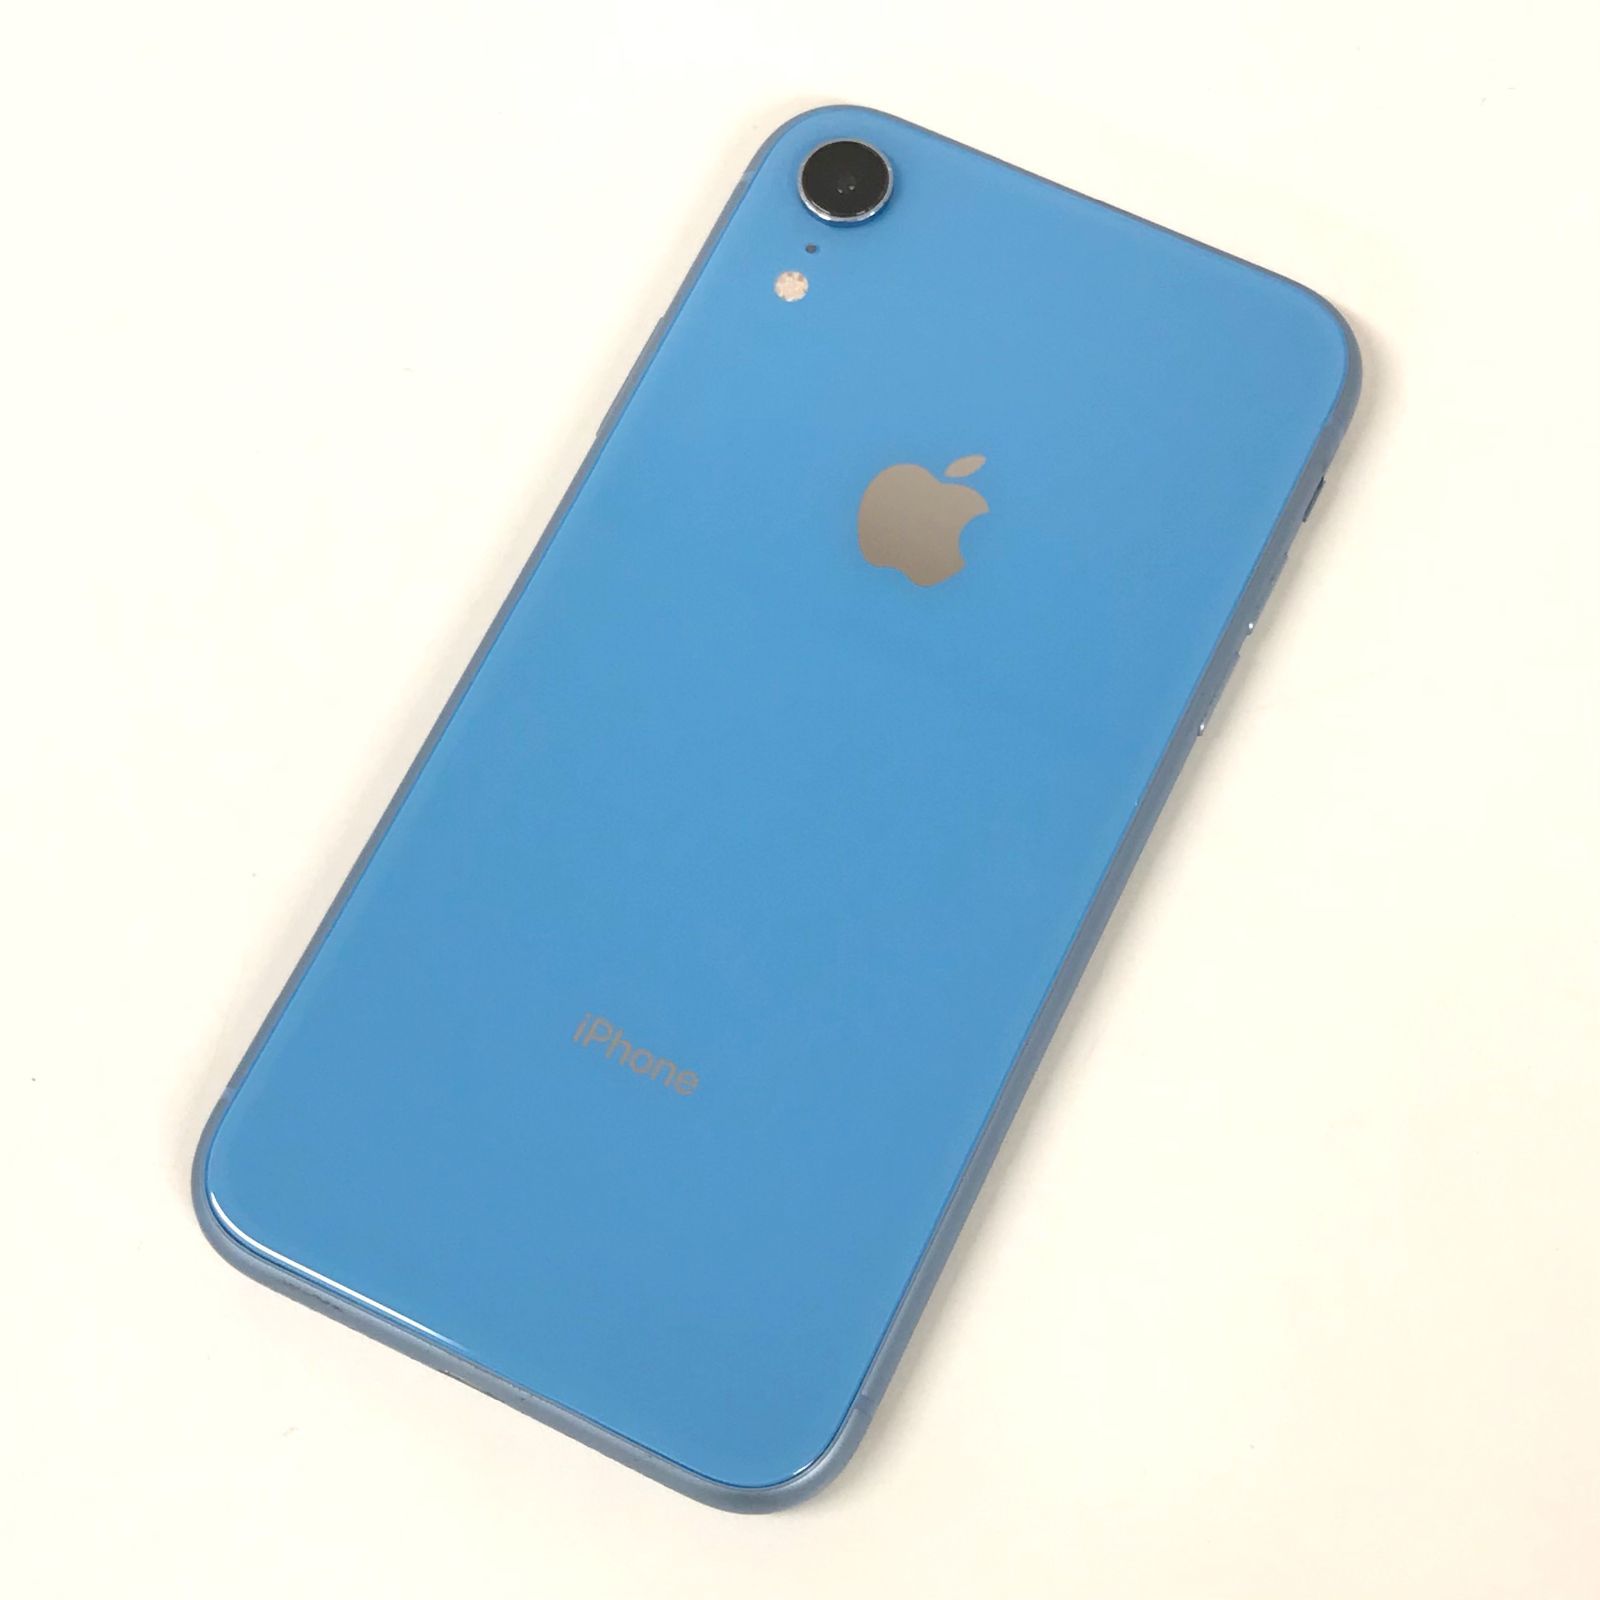 θ【SIMロック解除済み/ジャンク品】iPhone XR 128GB ブルー - メルカリスマートフォン/携帯電話